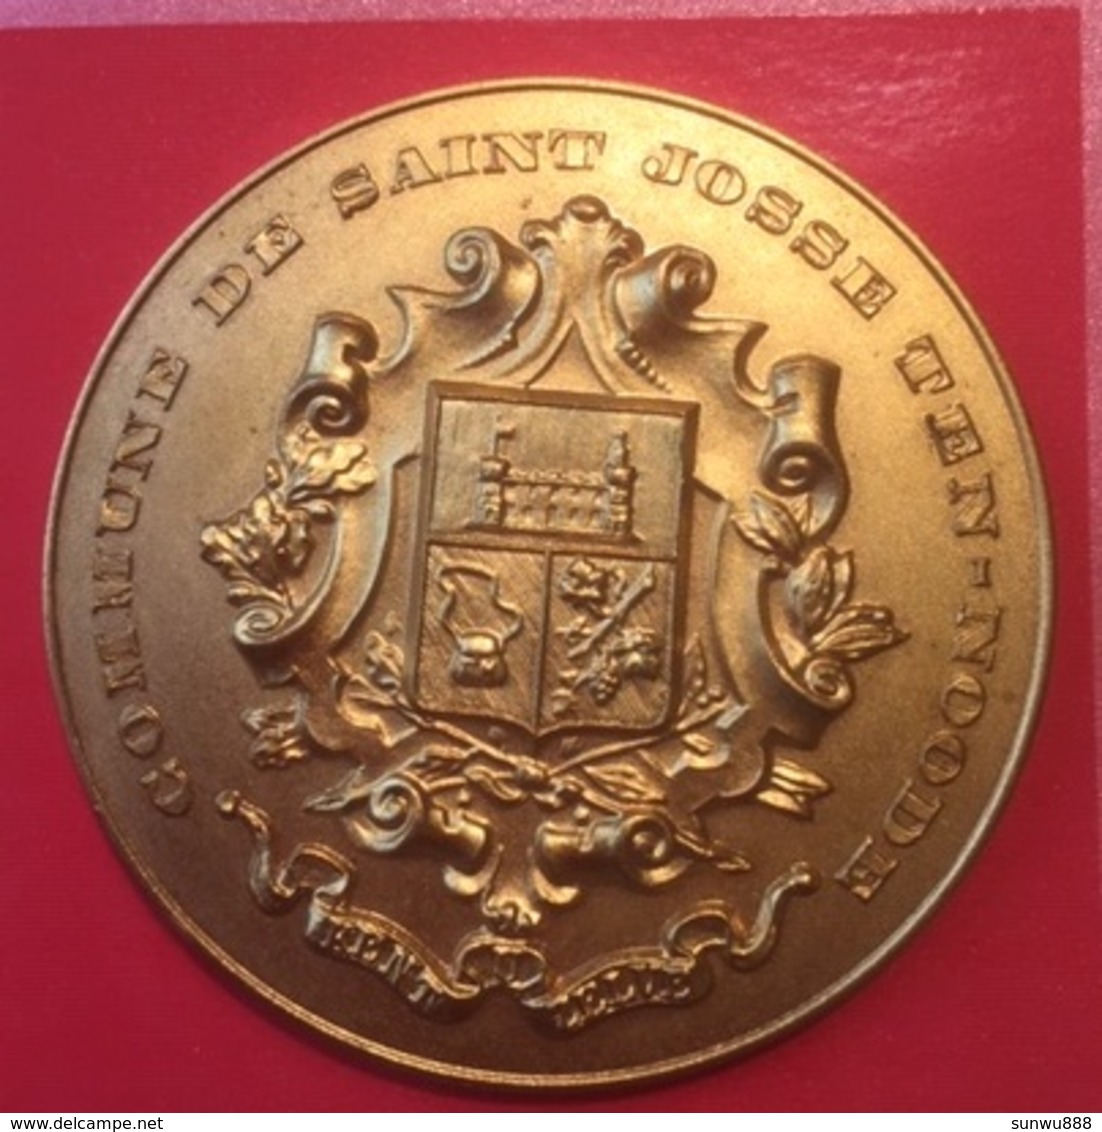 Très Belle Médaille Commune De Saint-Josse Ten-Noode Semaine Sportive 1966 (diamètre 50 Mm) - Jetons De Communes